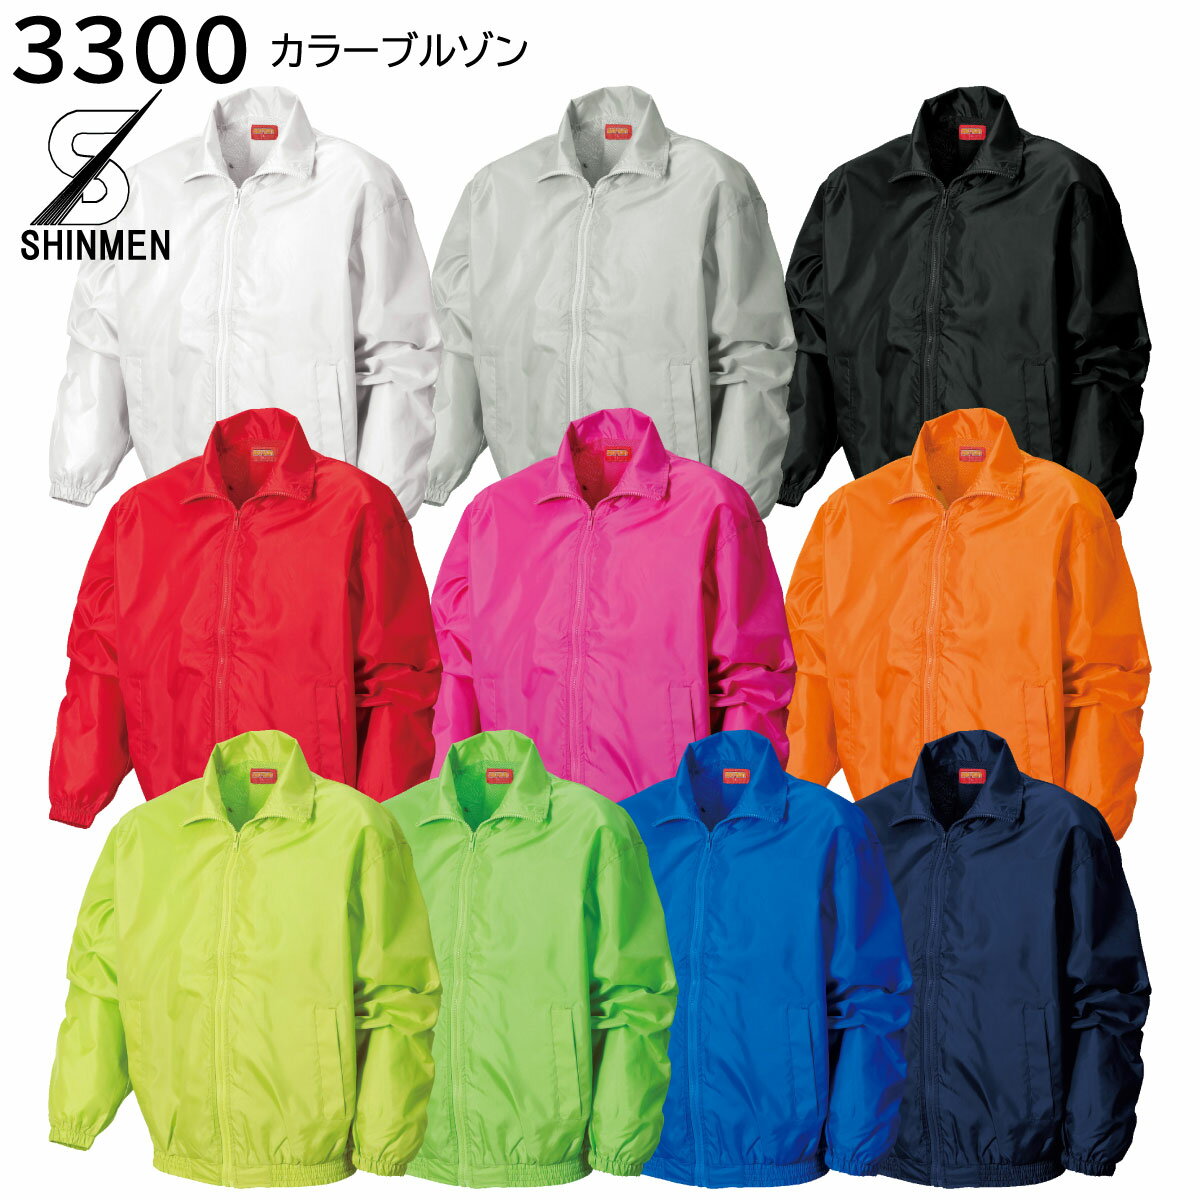 カラーブルゾン 3300 M〜3L シンメン 作業着 作業服 SHINMEN 10色展開